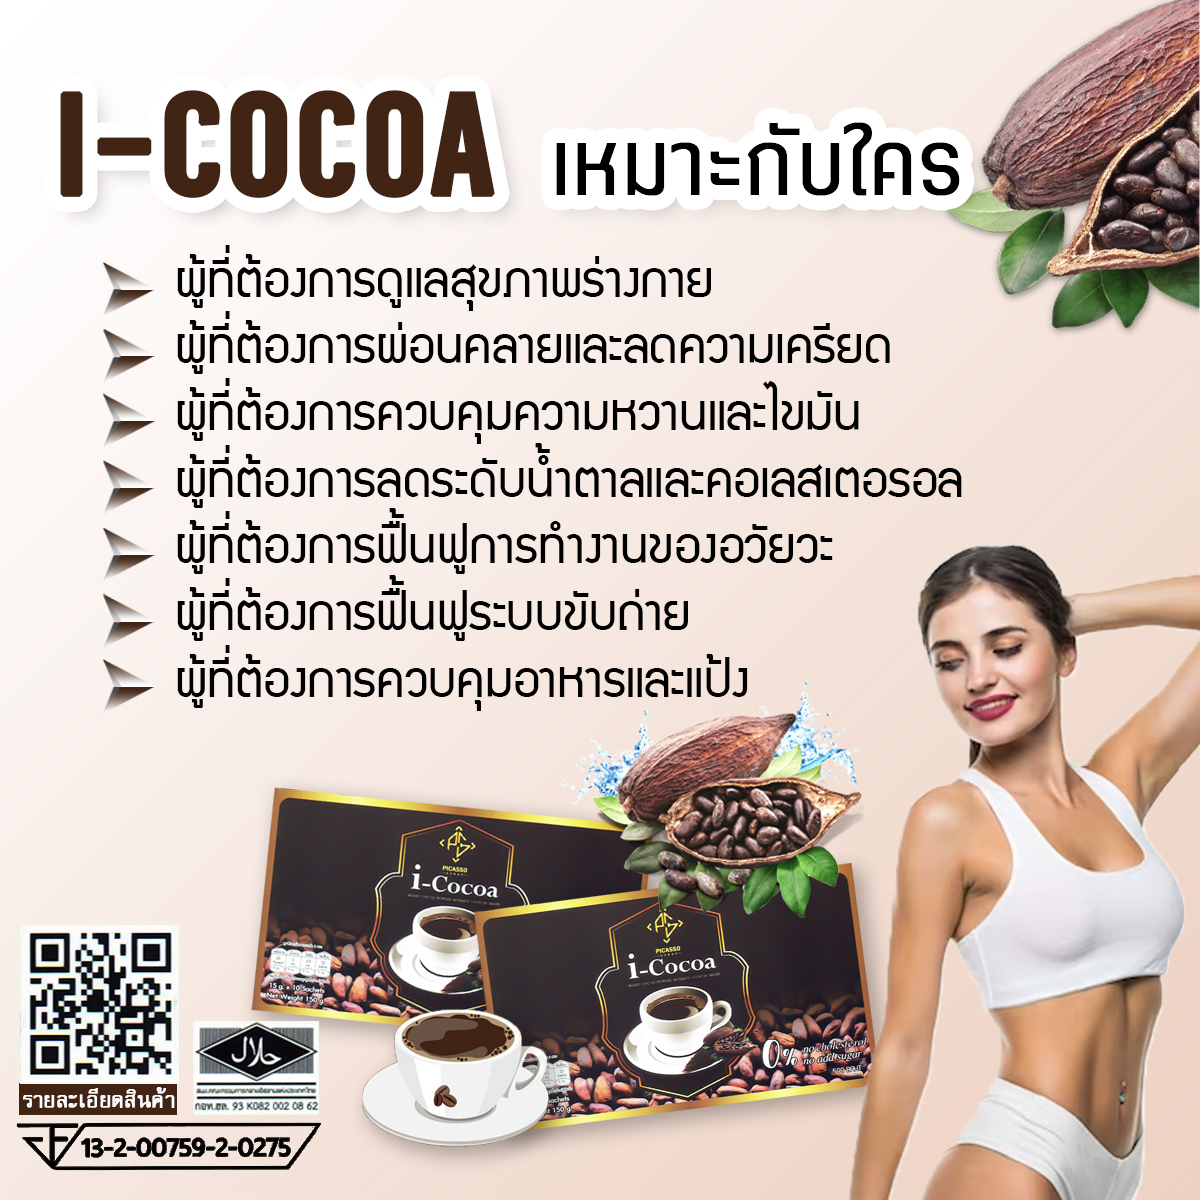 I-Cocoa ไอ โกโก้ เครื่องดื่มประจำวันเพื่อสุขภาพ